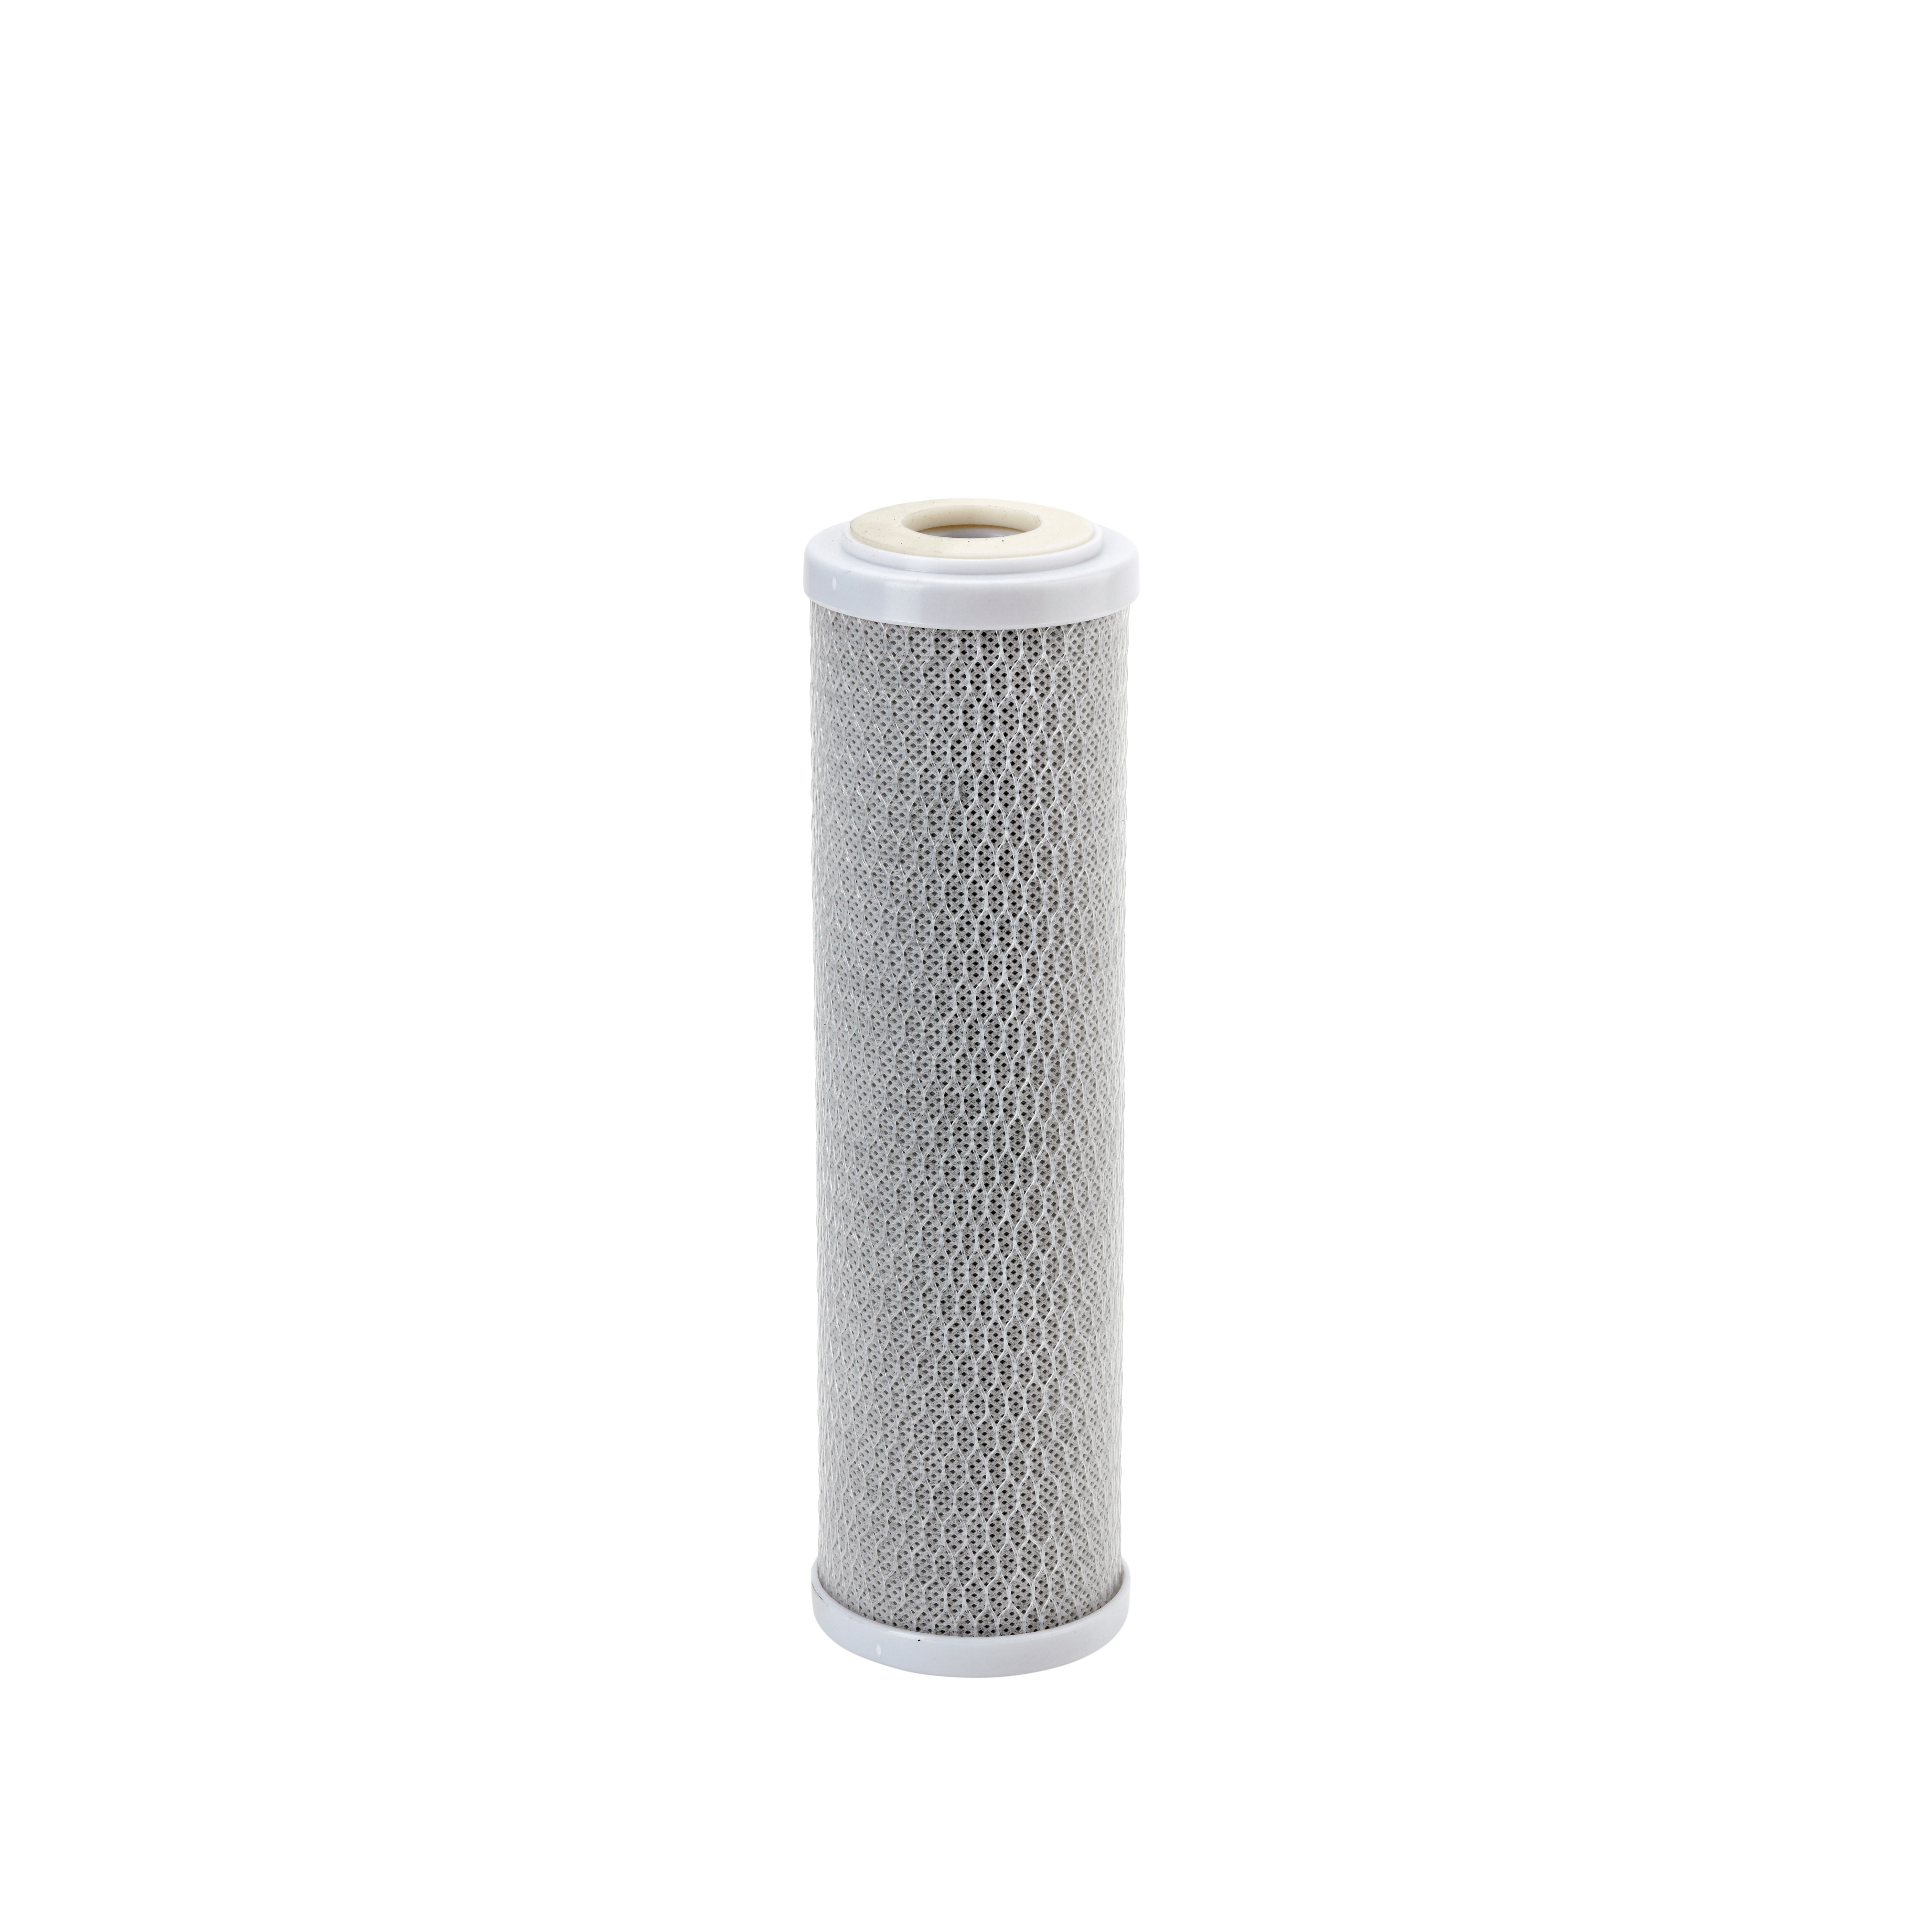 527309 - Cartouche nylon lavable 93/4 anti-sédiments, filtration